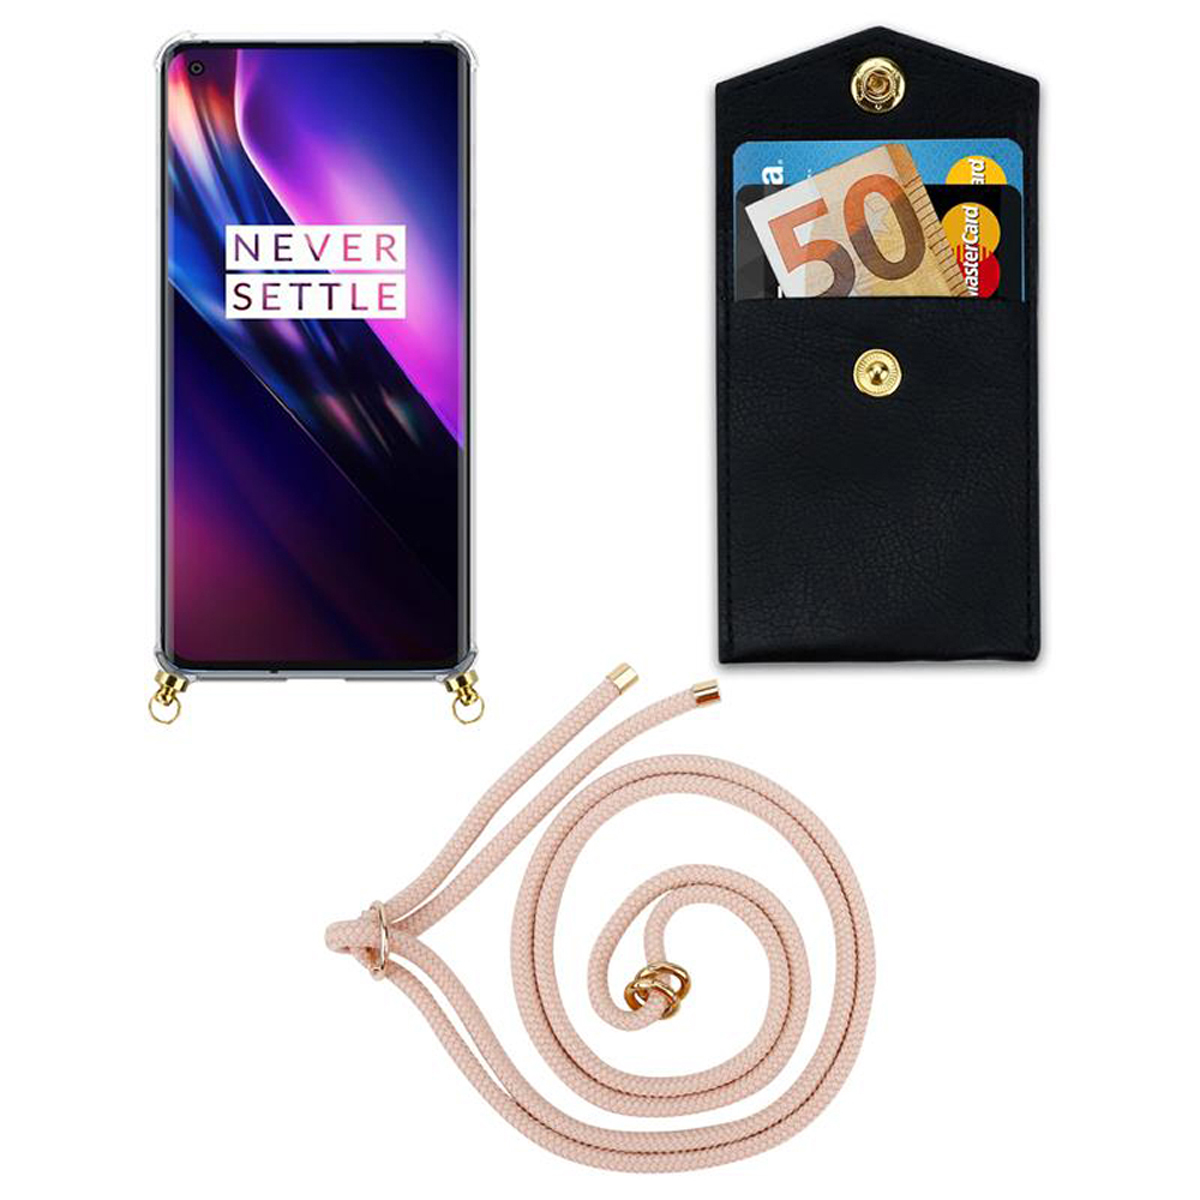 CADORABO Handy und Band ROSÉGOLD 8, Kette OnePlus, mit abnehmbarer Hülle, Gold Ringen, Backcover, PERLIG Kordel